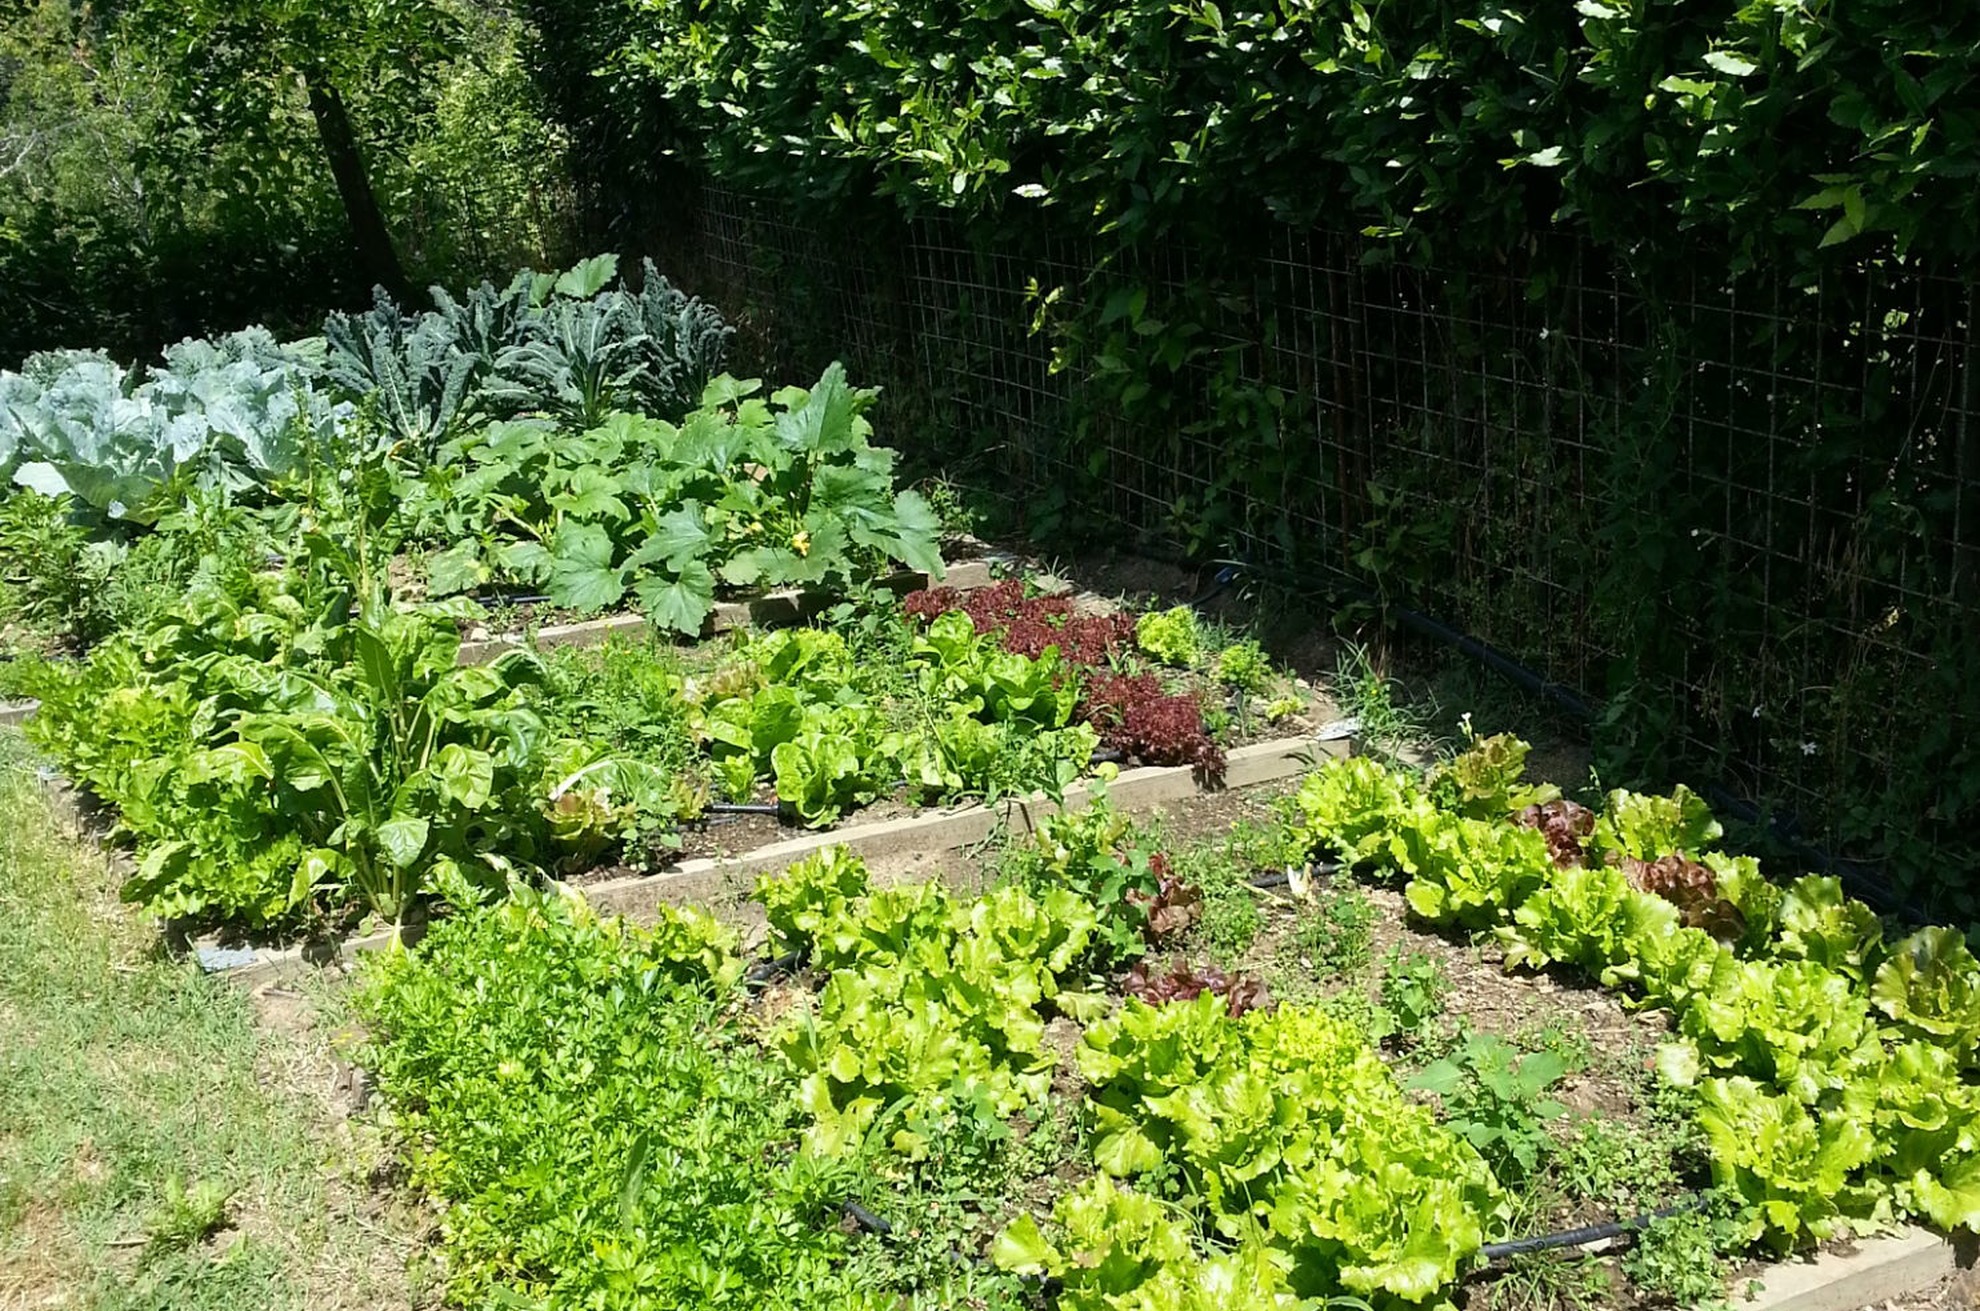 The Organic Garden